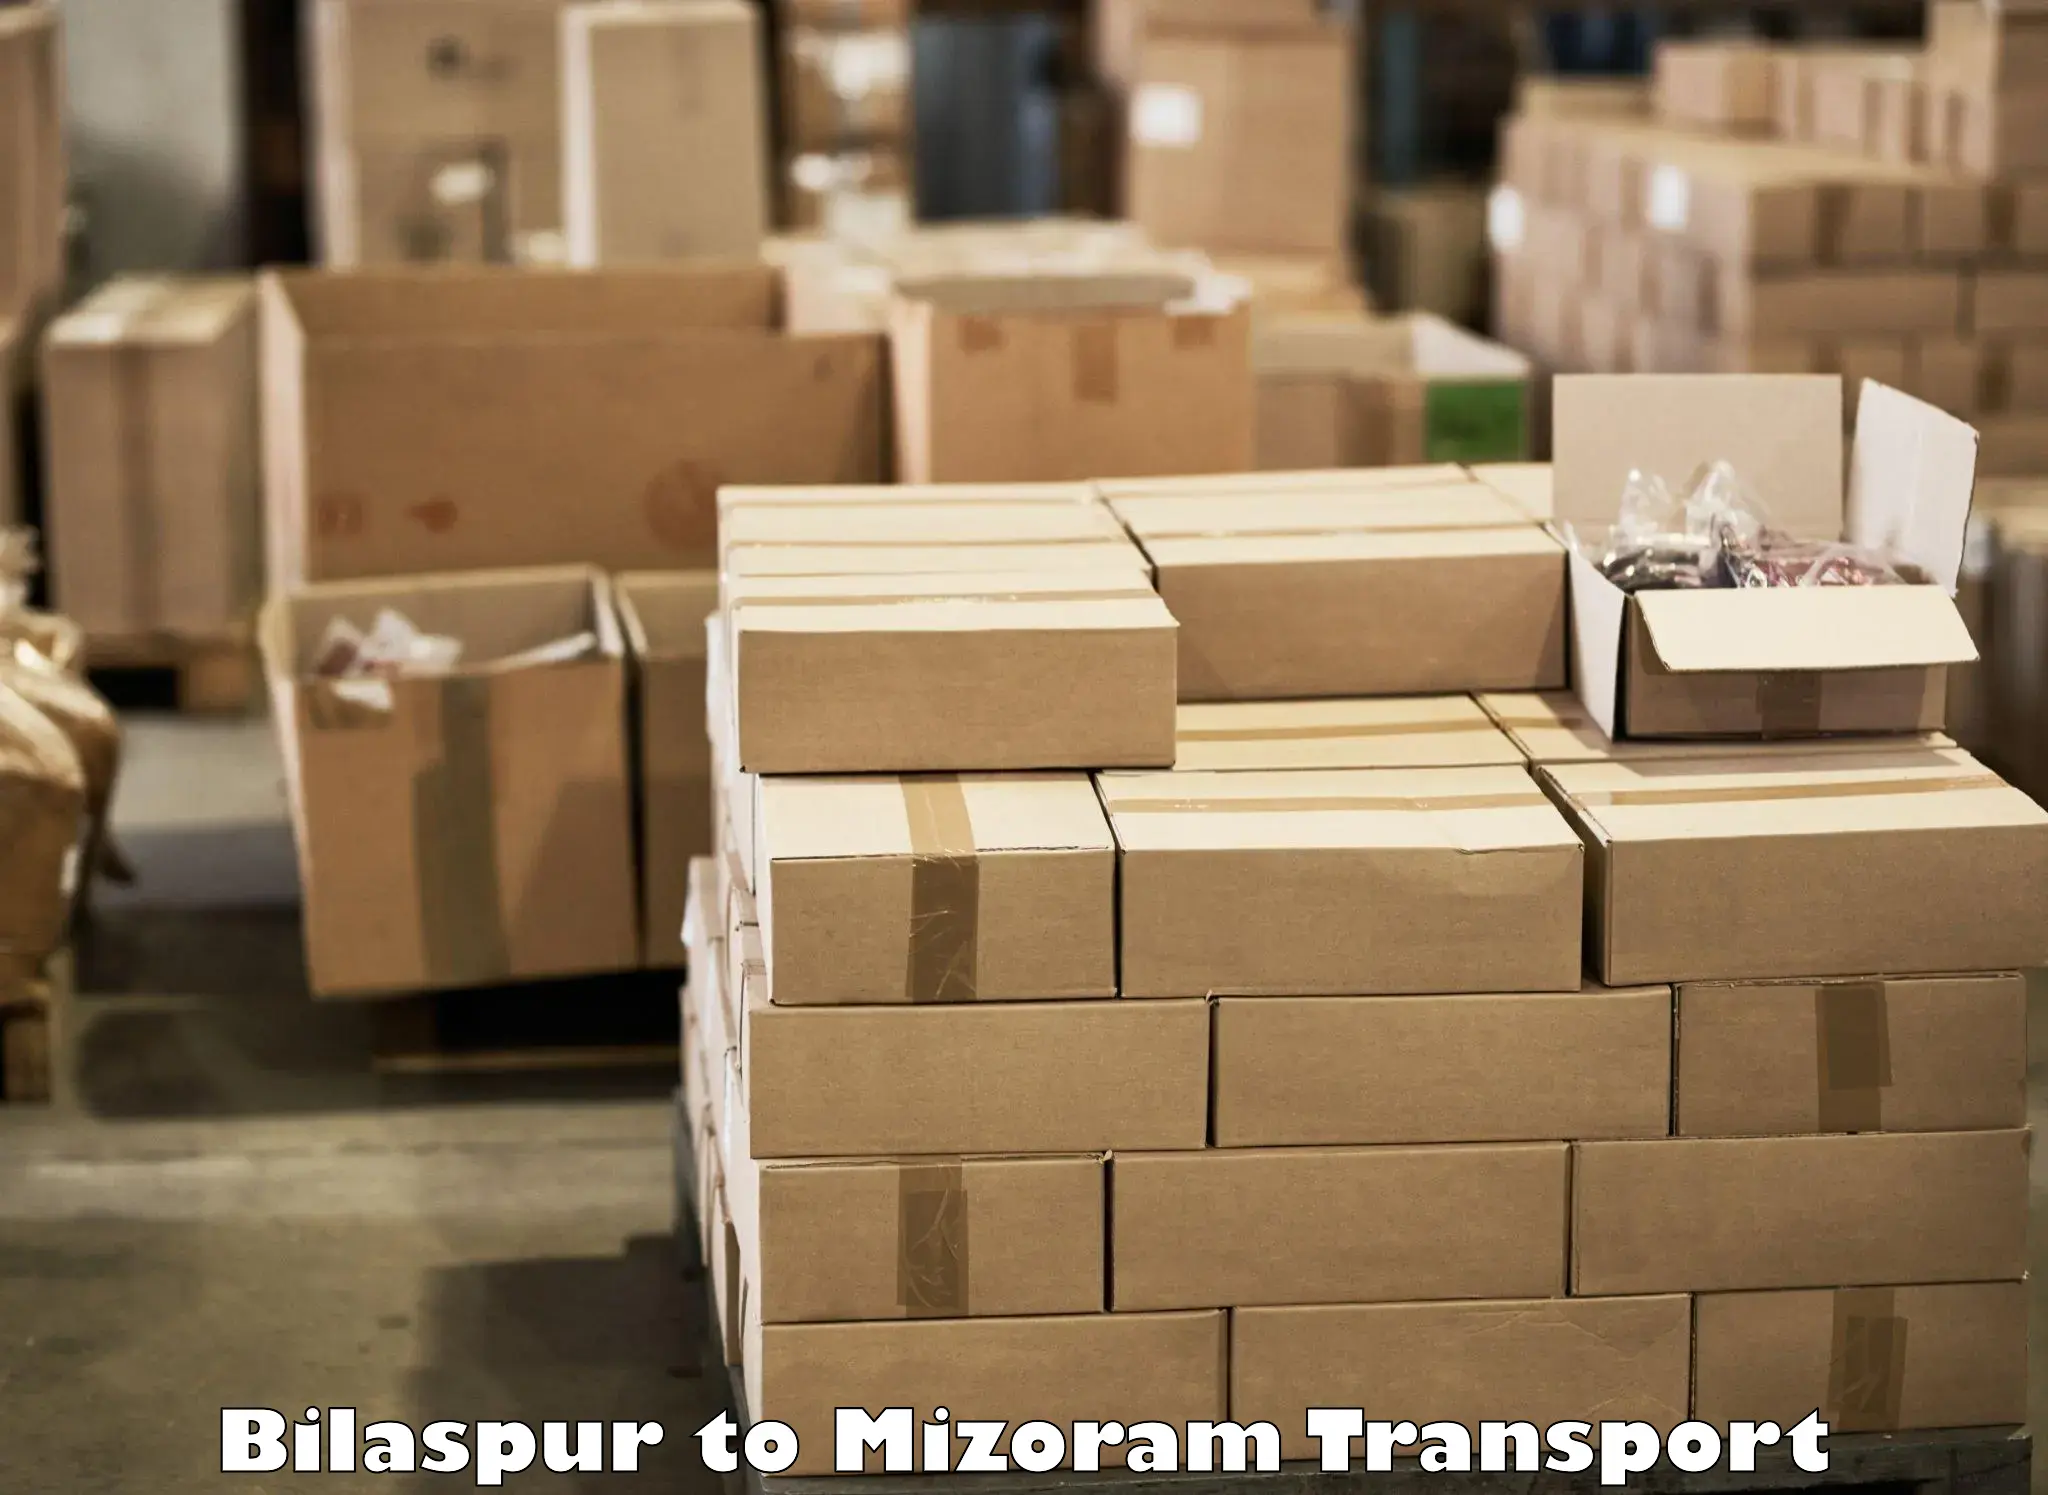 Nearby transport service Bilaspur to Khawzawl